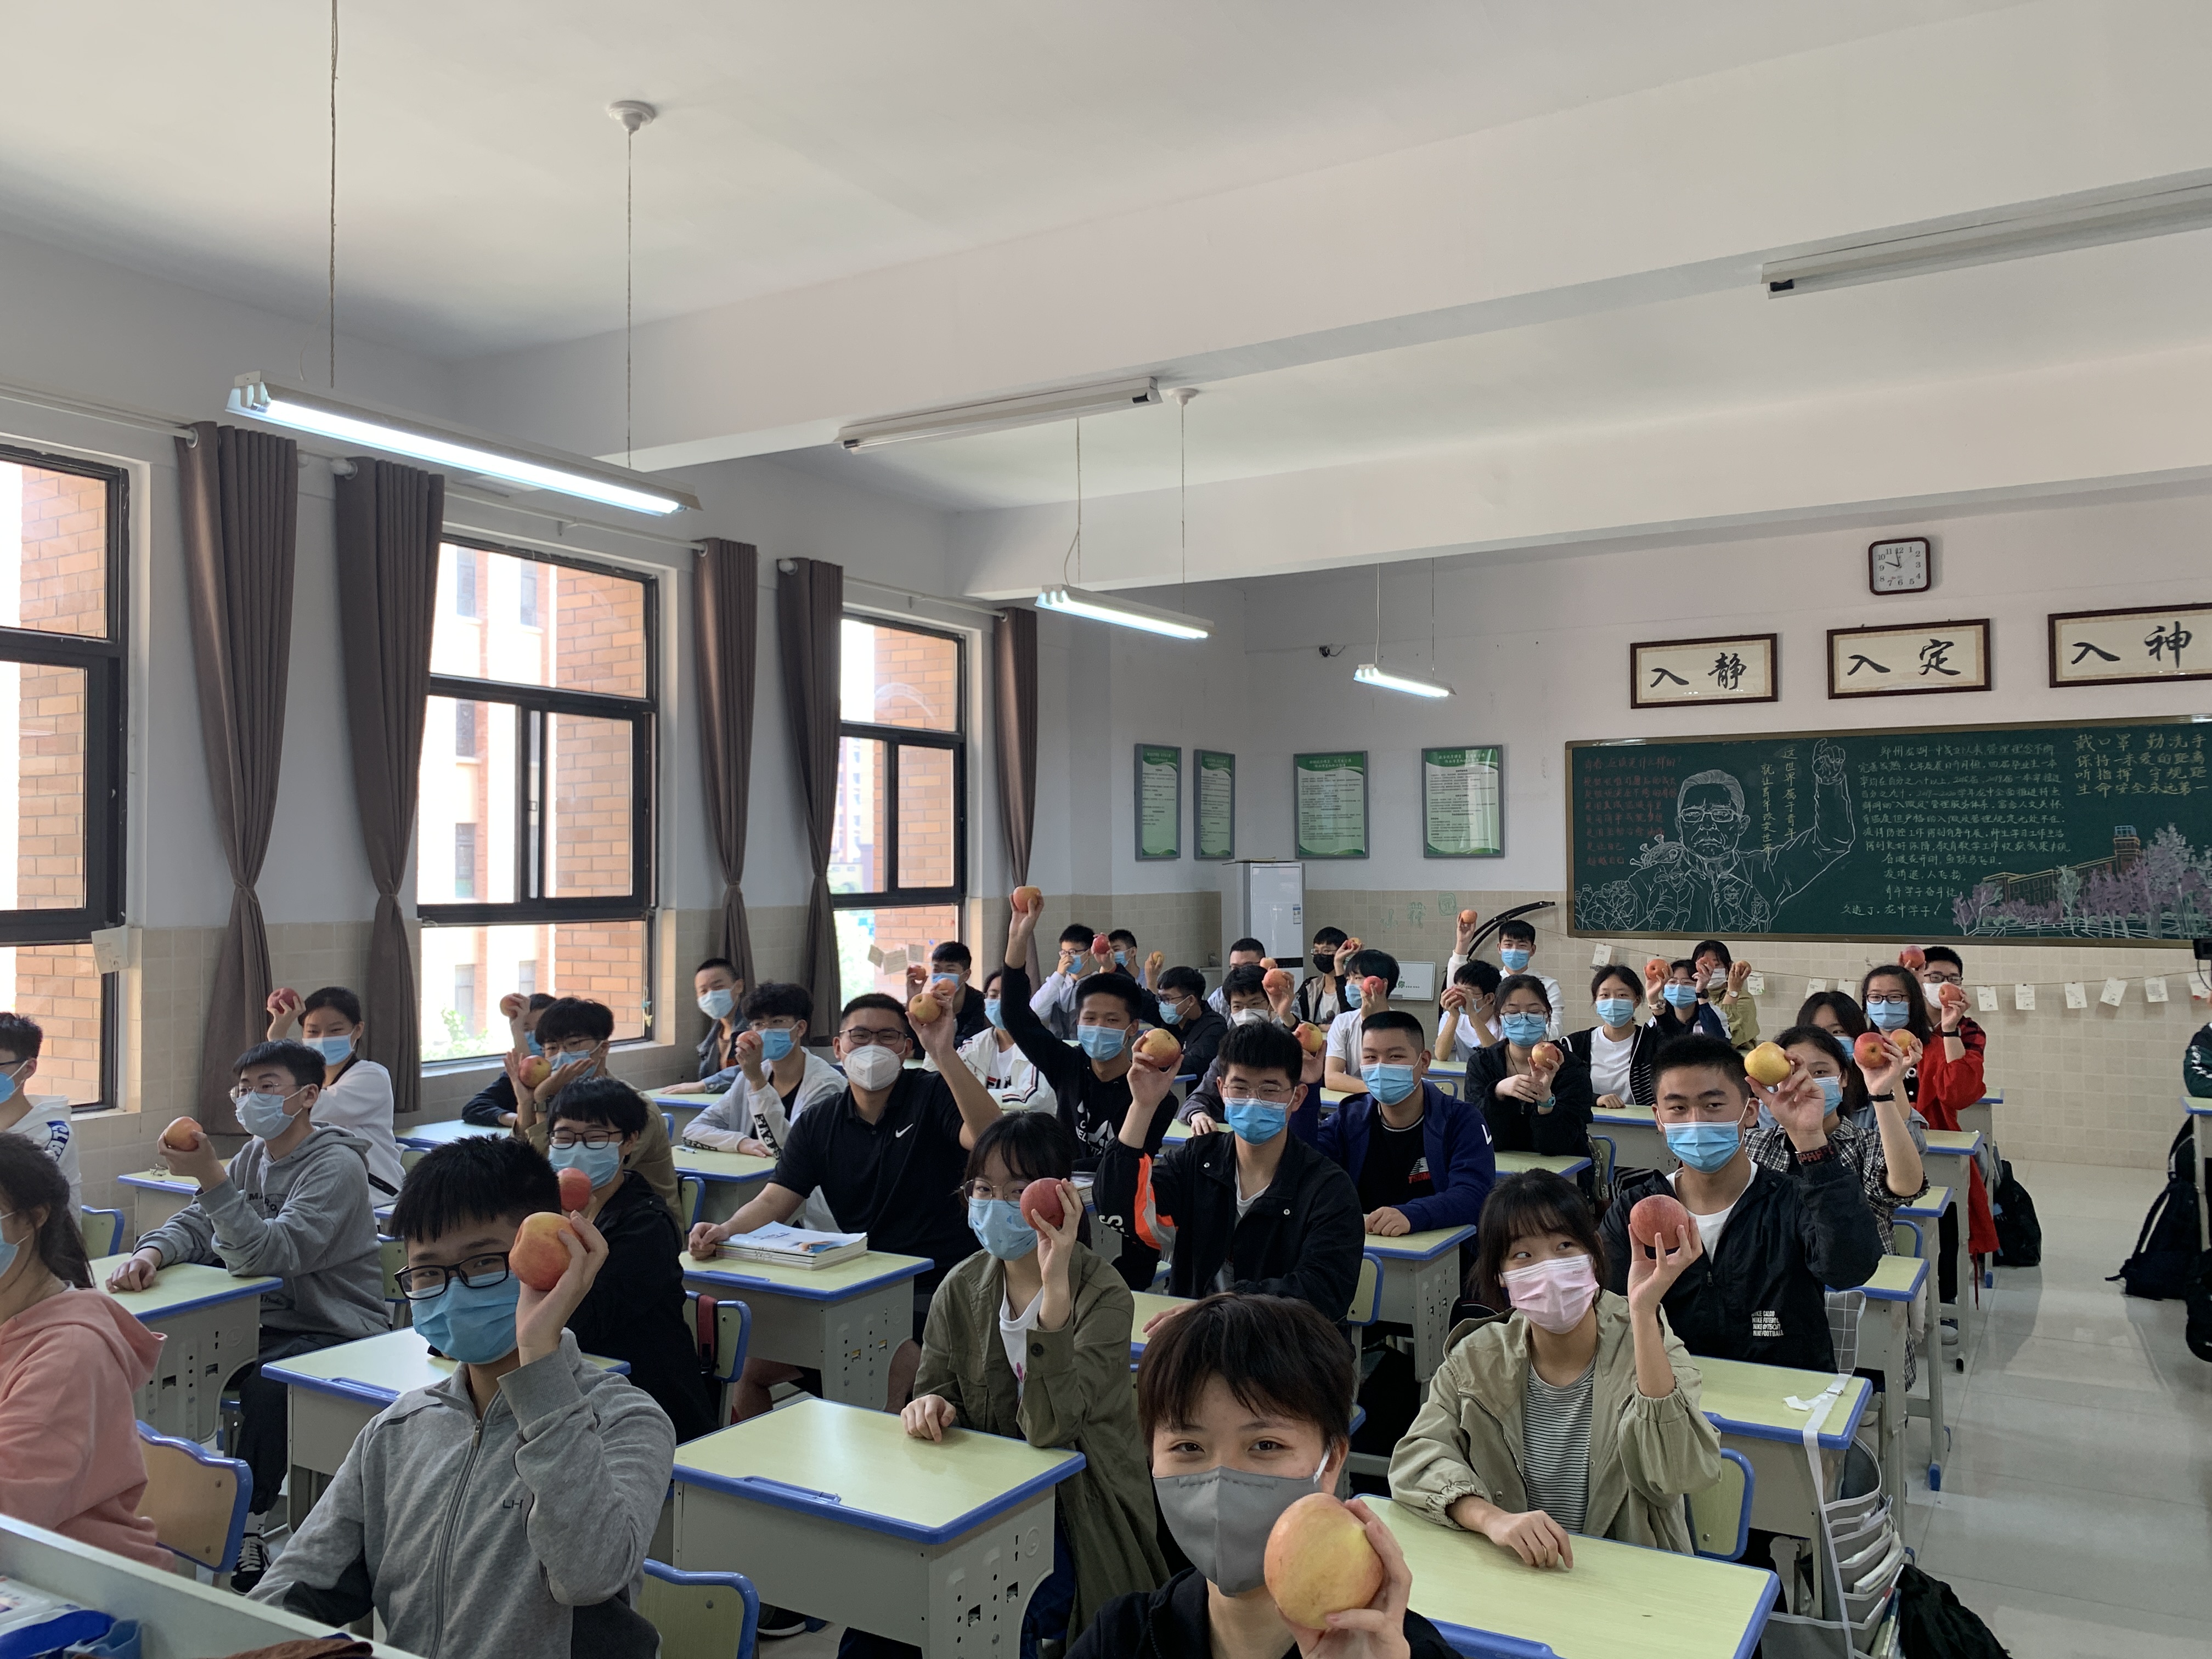 复学首日,郑州龙湖一中一教师给全班学生每人发放一颗苹果,寓意平平安